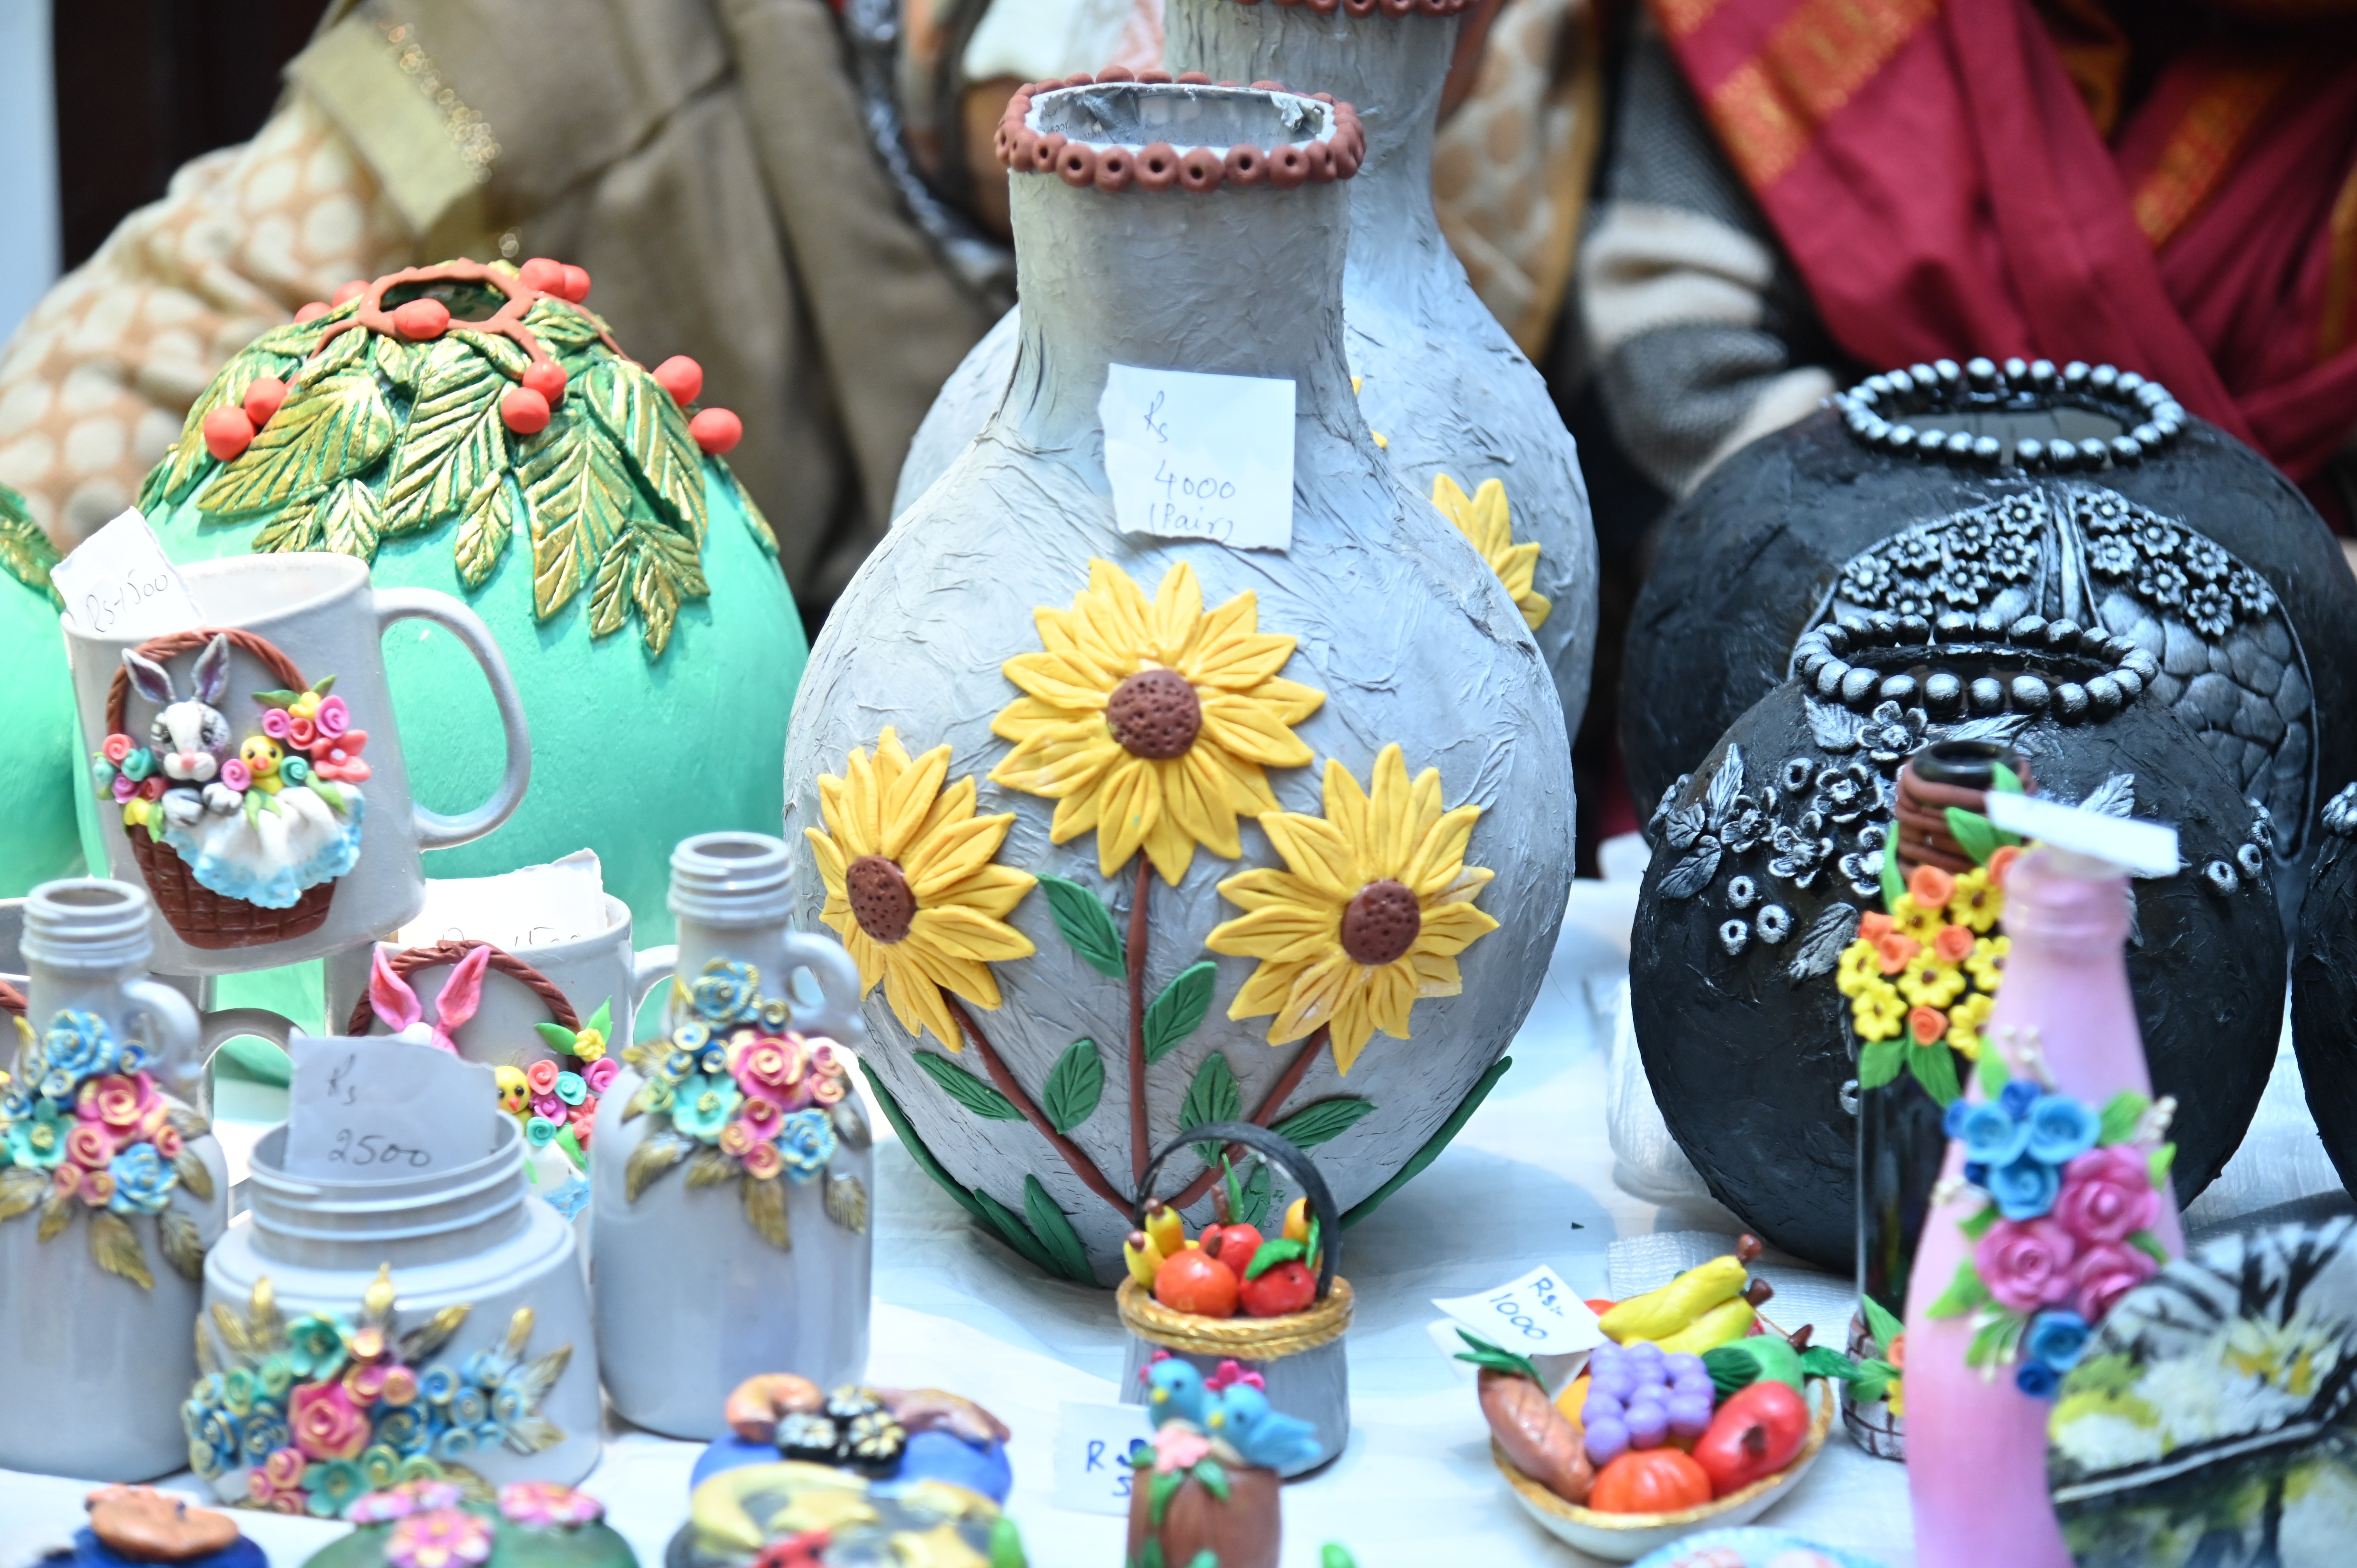 The home décor accessories made of ceramics